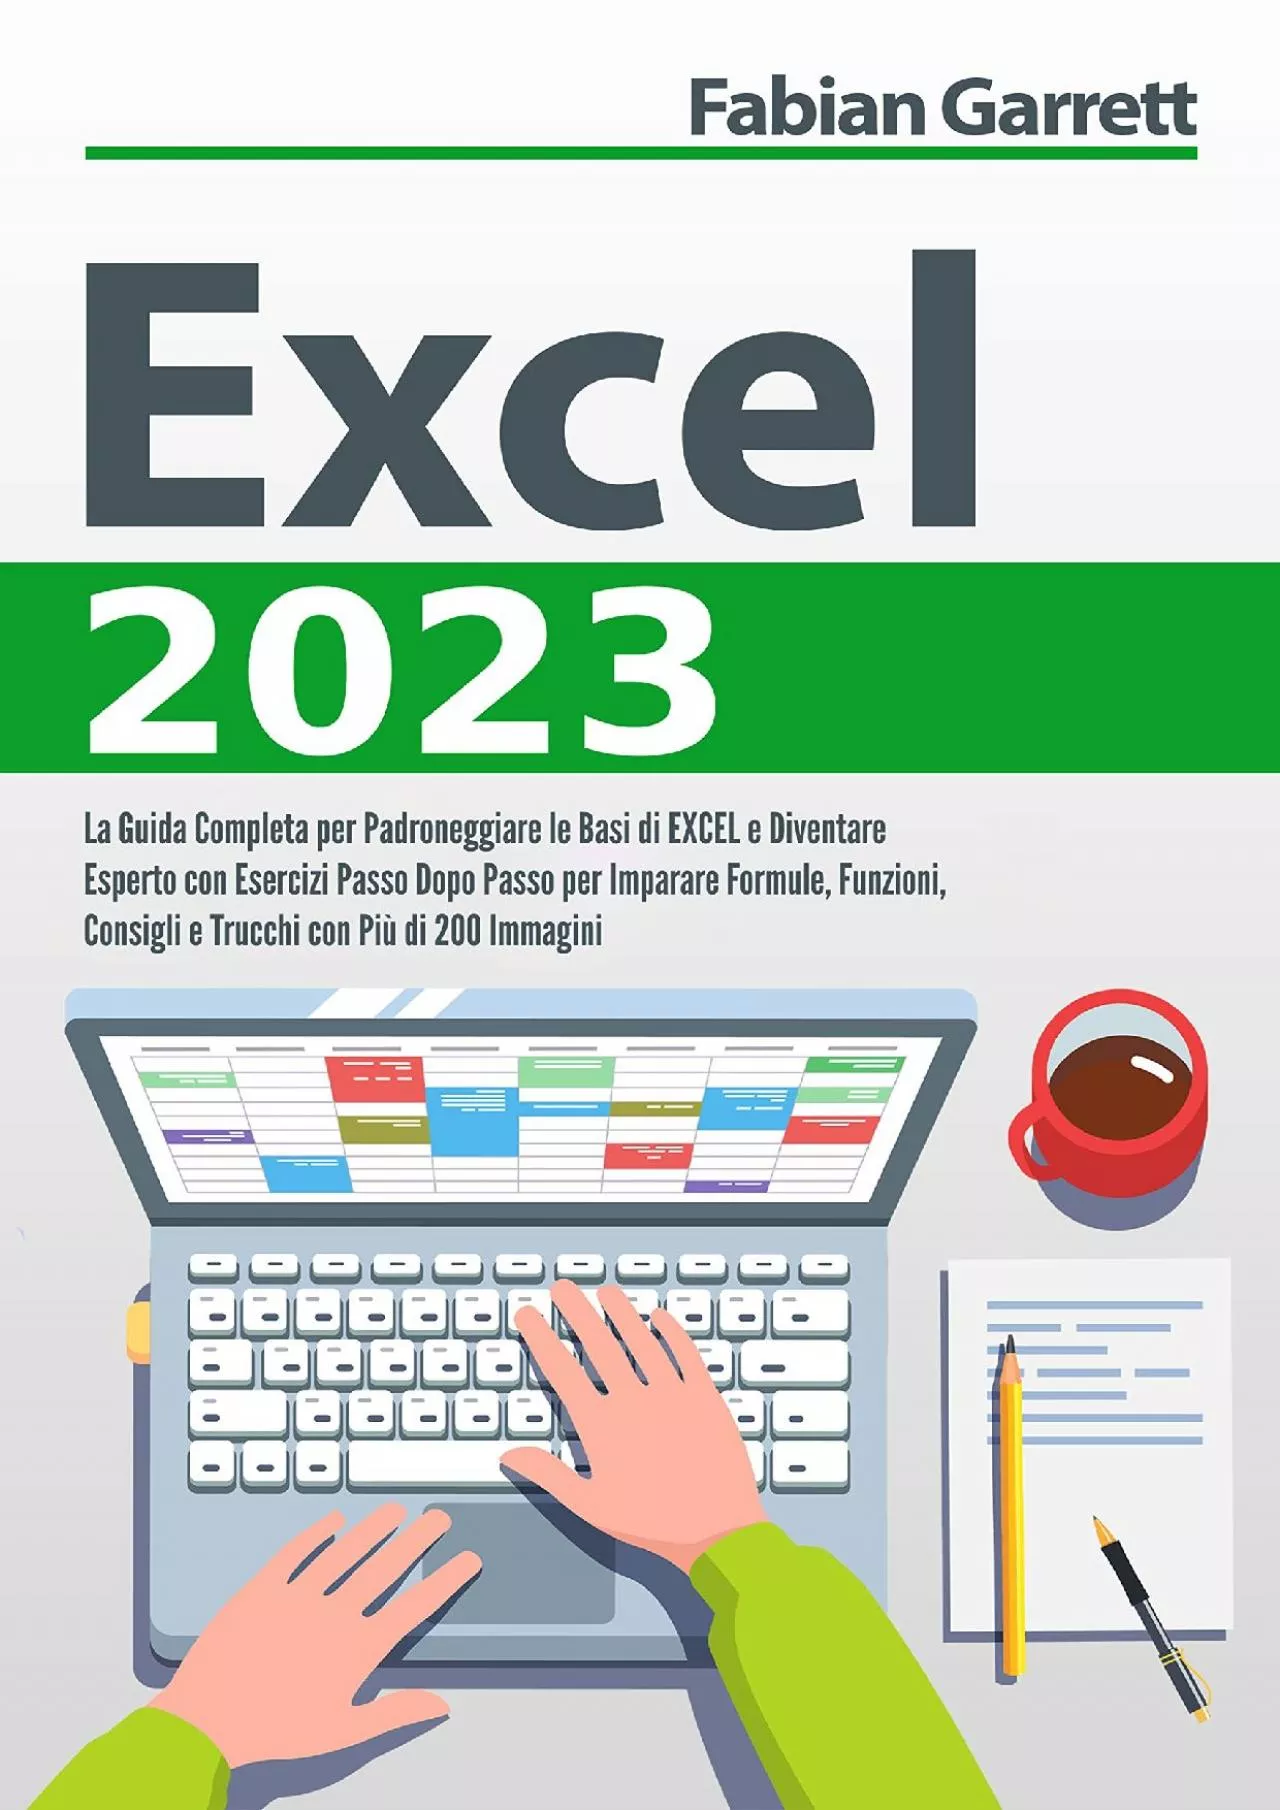 (BOOS)-Excel 2023: La Guida Completa per Padroneggiare le Basi di EXCEL e Diventare Esperto